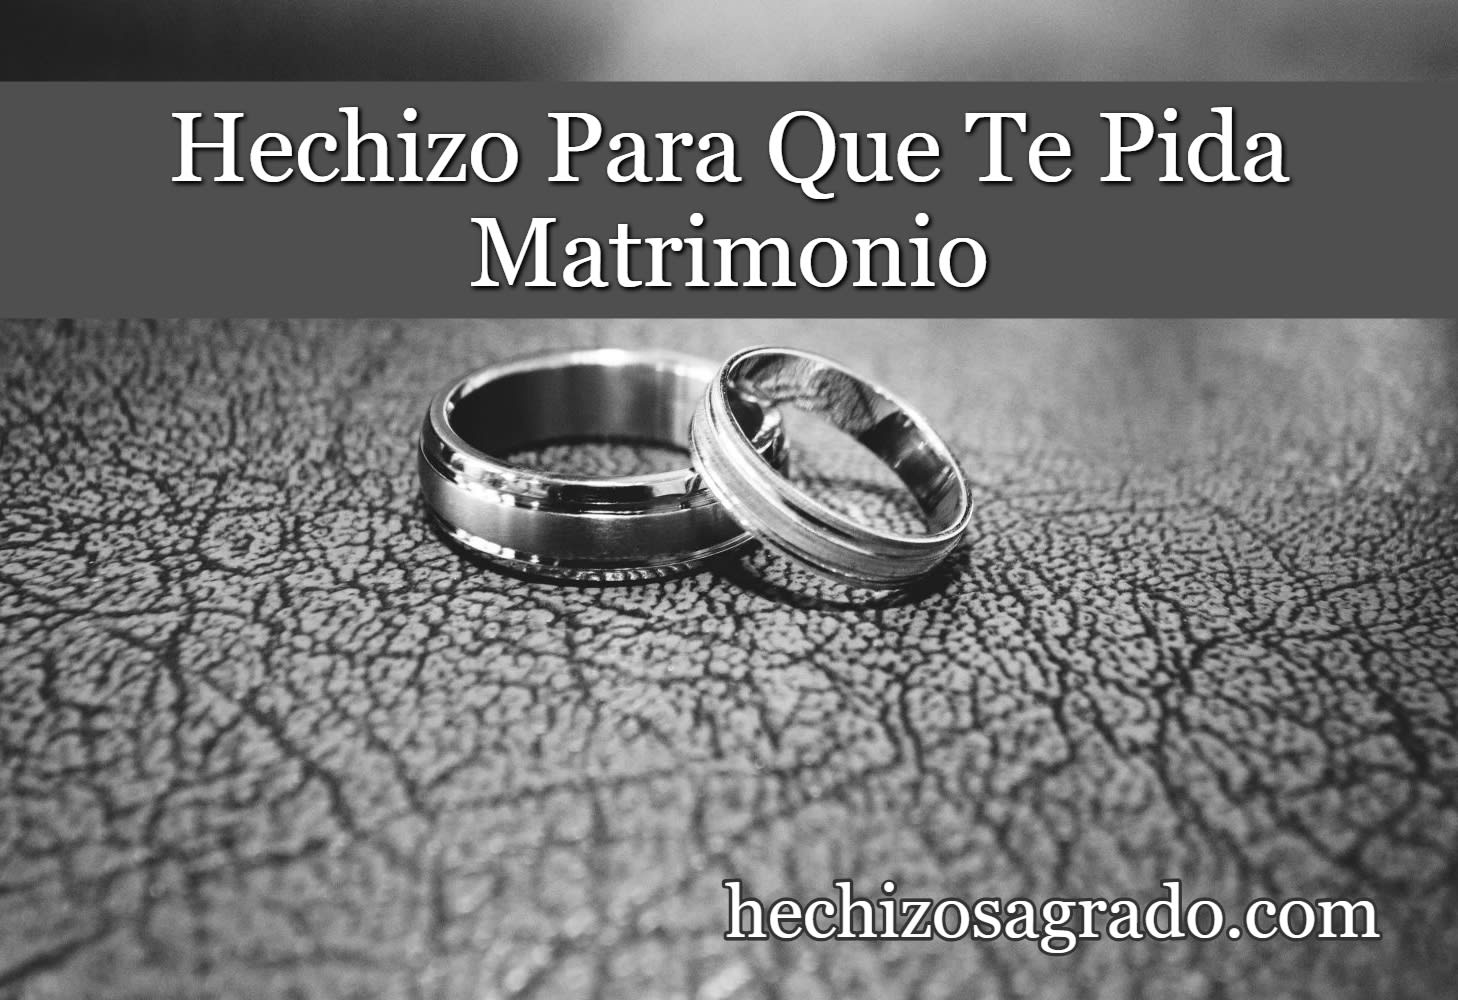 Hechizo Para Que Te Pida Matrimonio